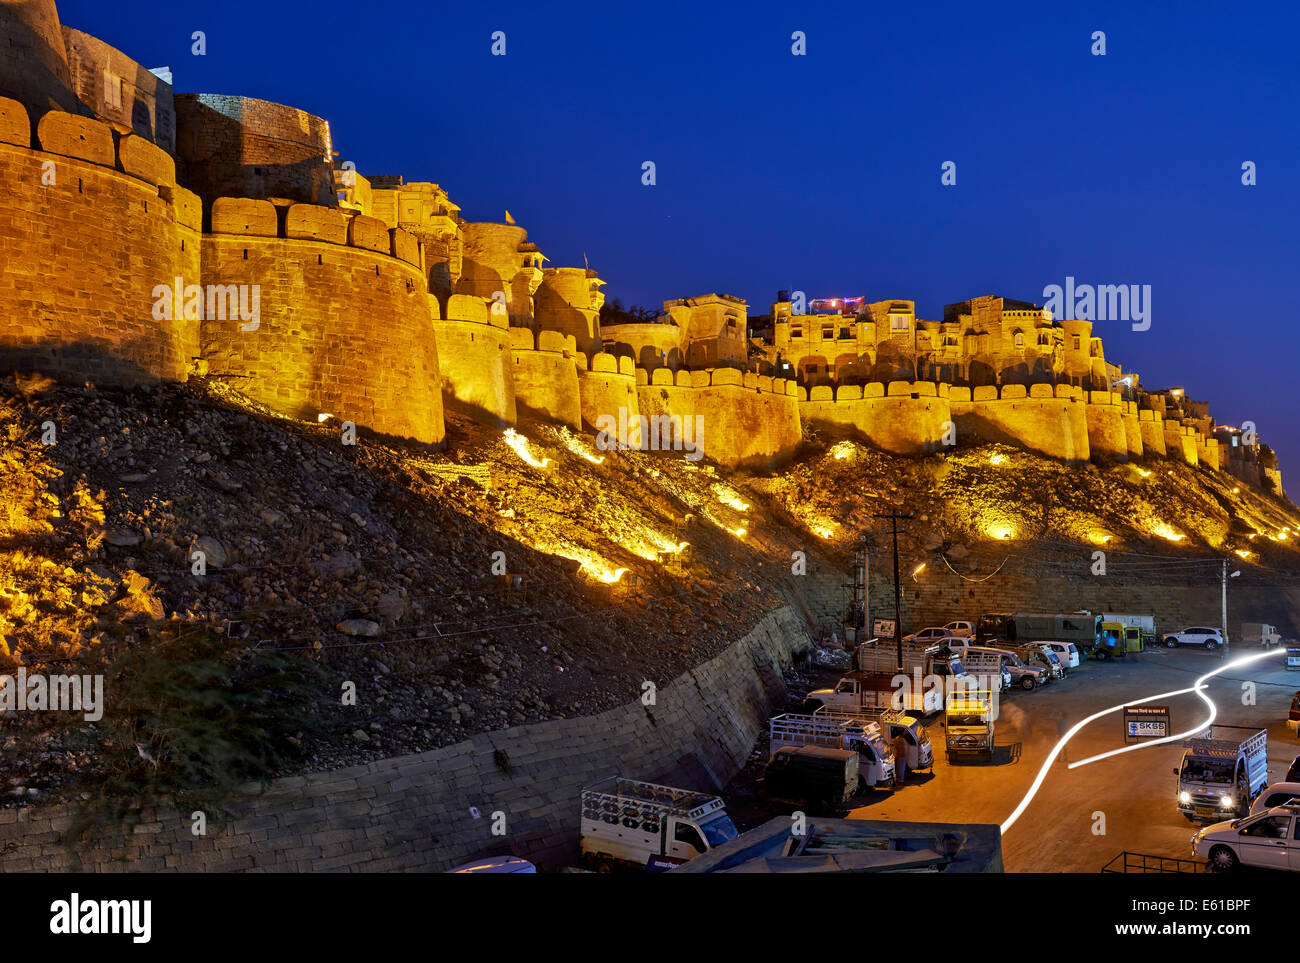 Night Shot iluminado de la muralla de la ciudad de Jaisalmer, Rajasthan, India Foto de stock